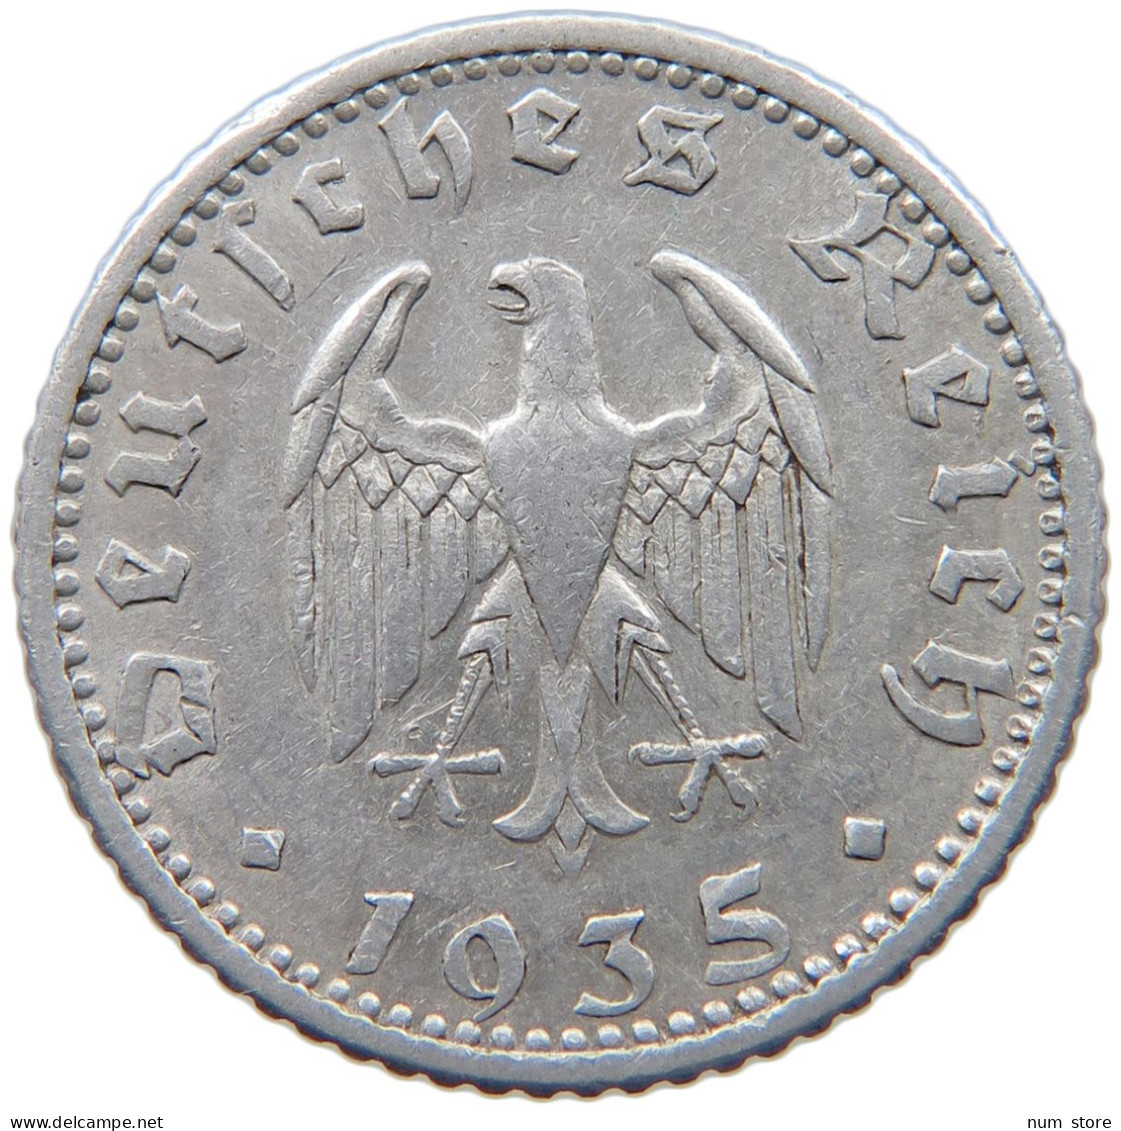 GERMANY 50 PFENNIG 1935 F #c040 0197 - 50 Reichspfennig